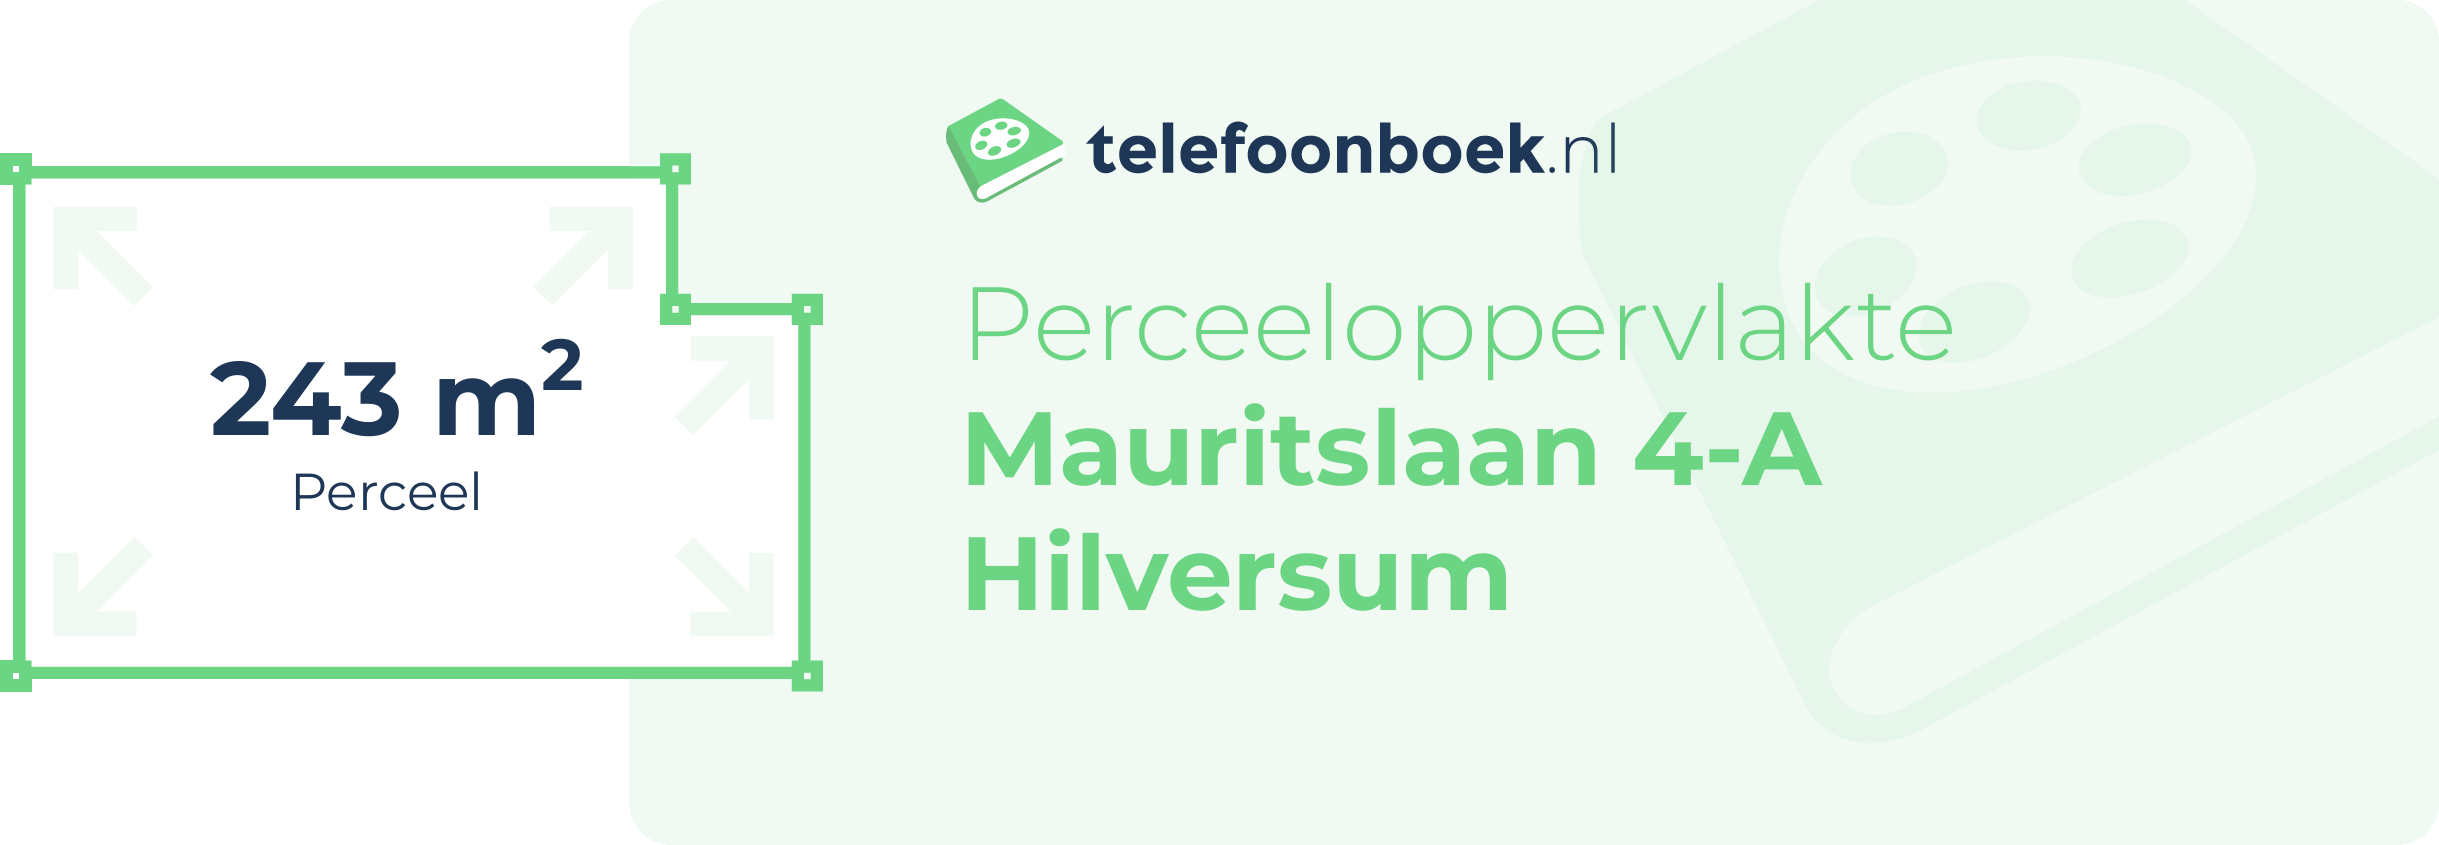 Perceeloppervlakte Mauritslaan 4-A Hilversum